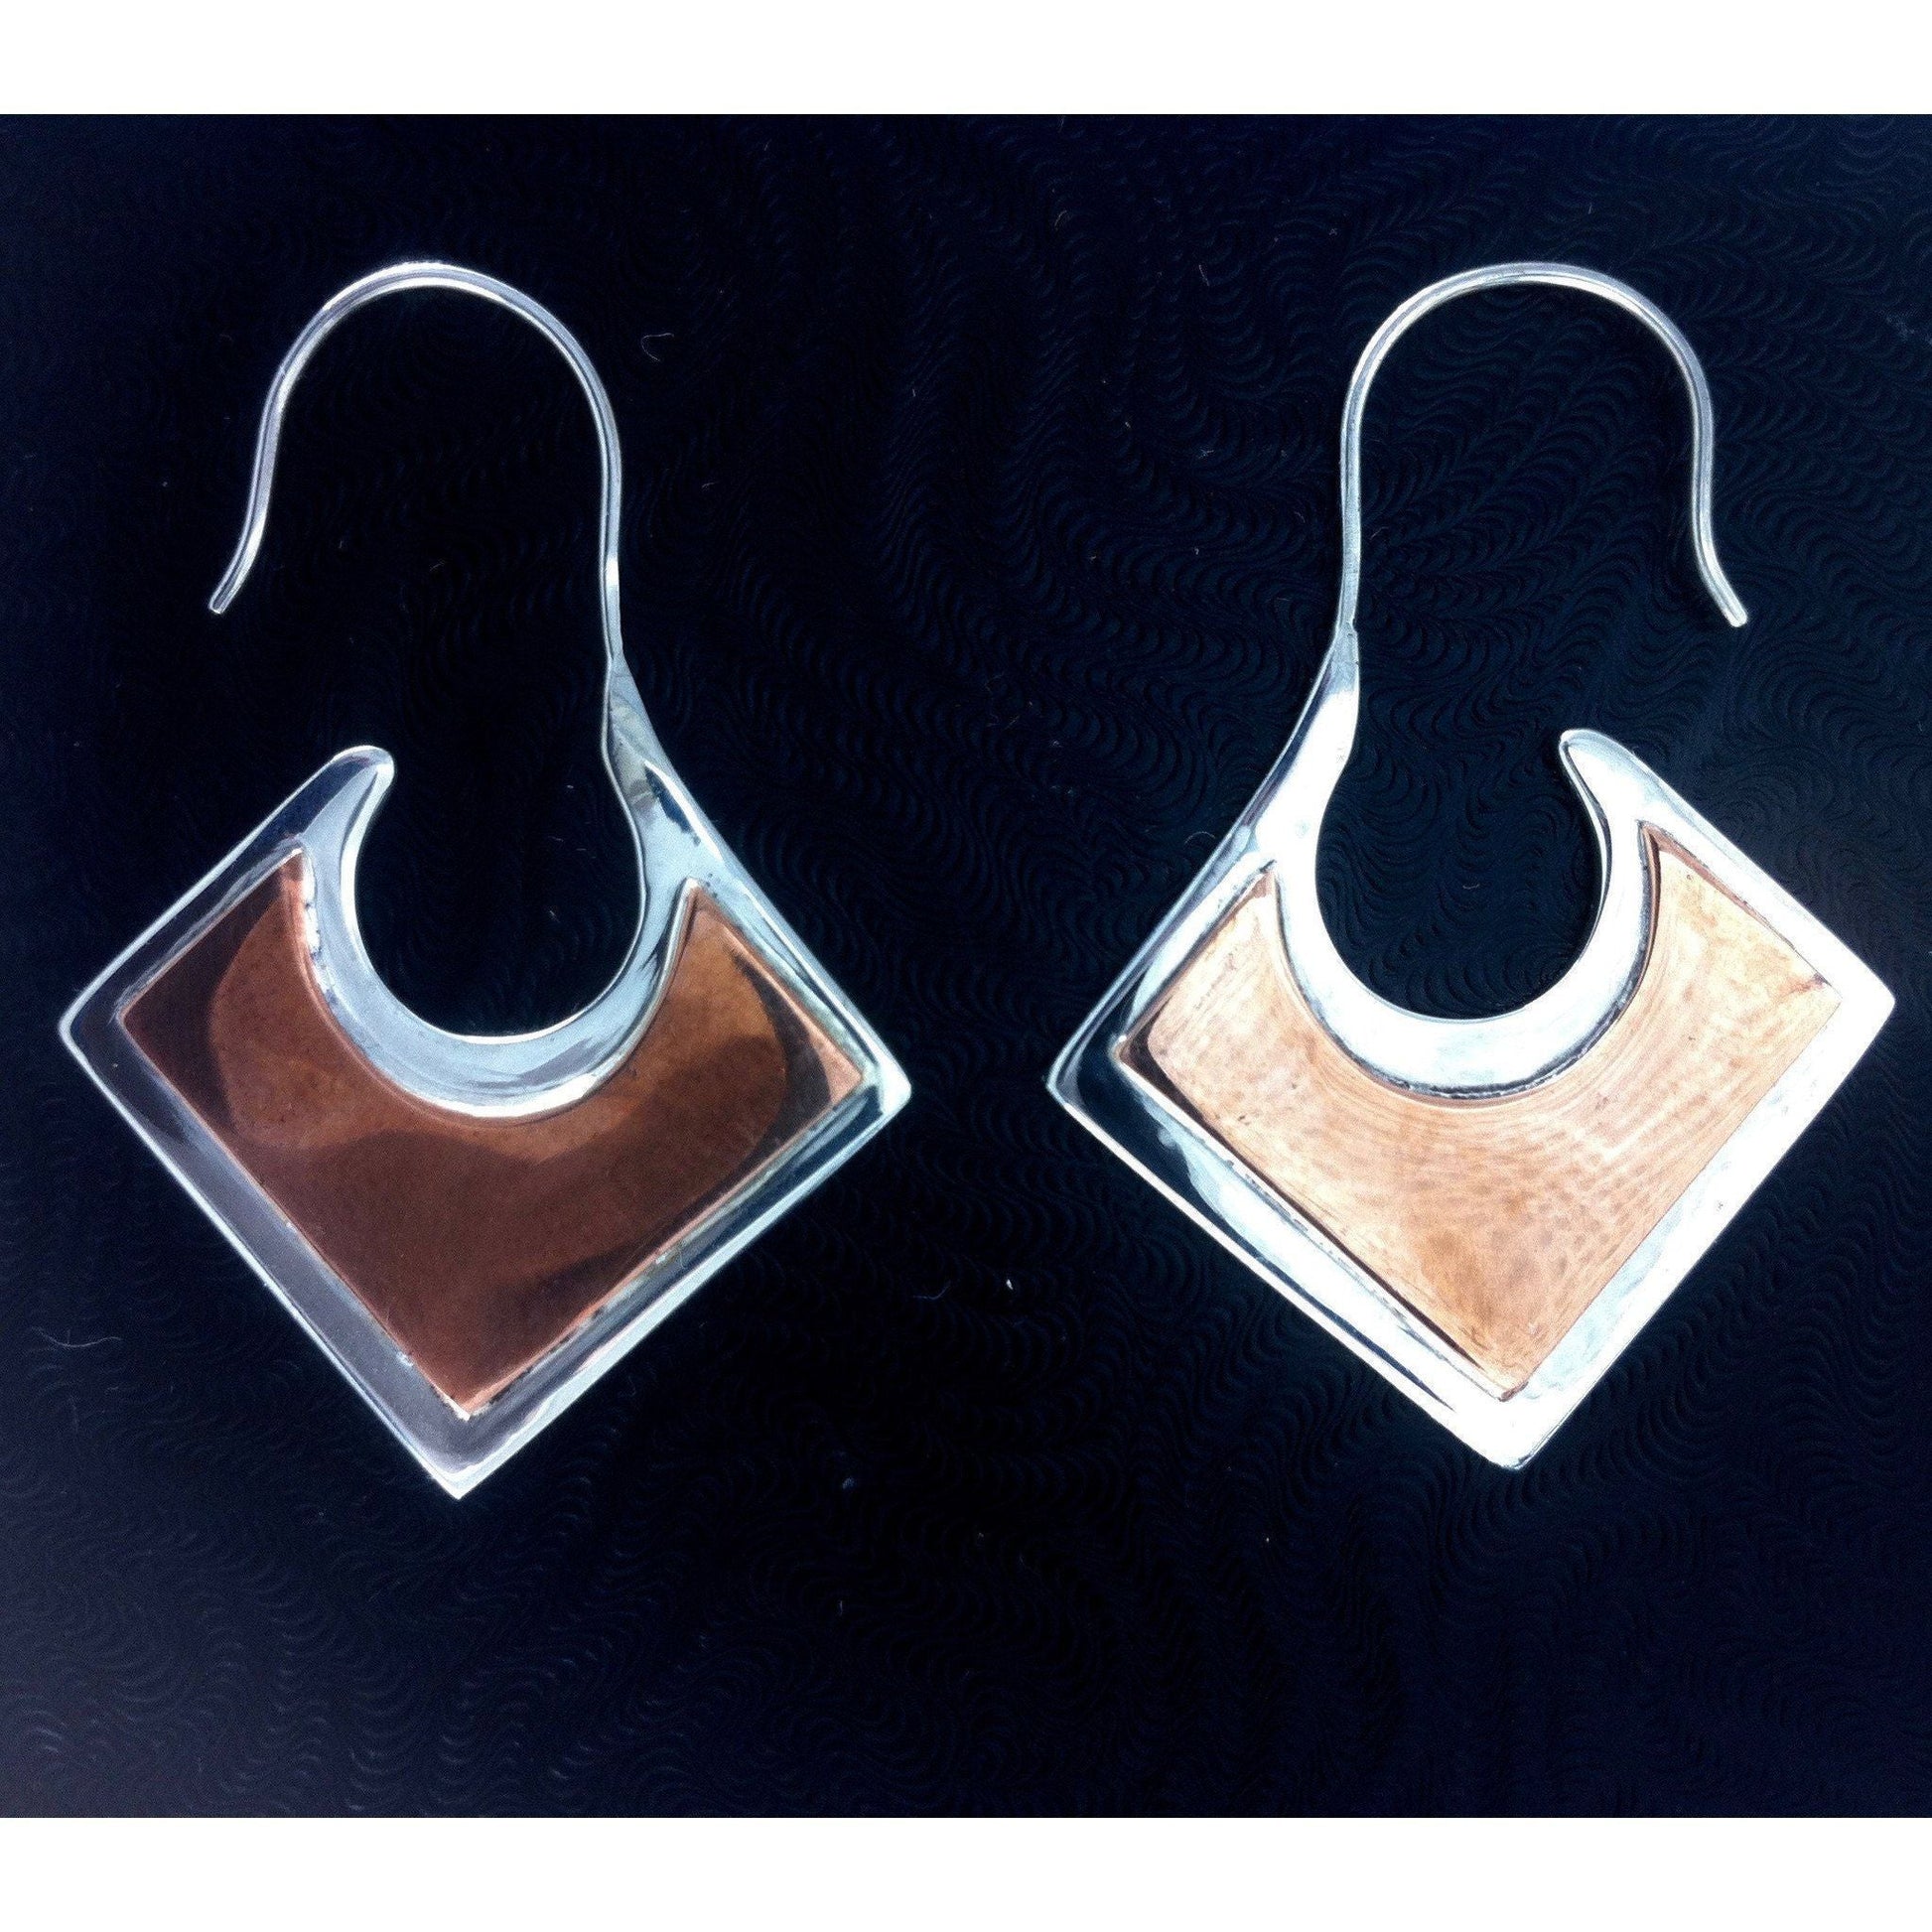 Tribal Earrings :|: Copper and Silver. sterling silver with copper highlights earrings. | Tribal Silver Earrings